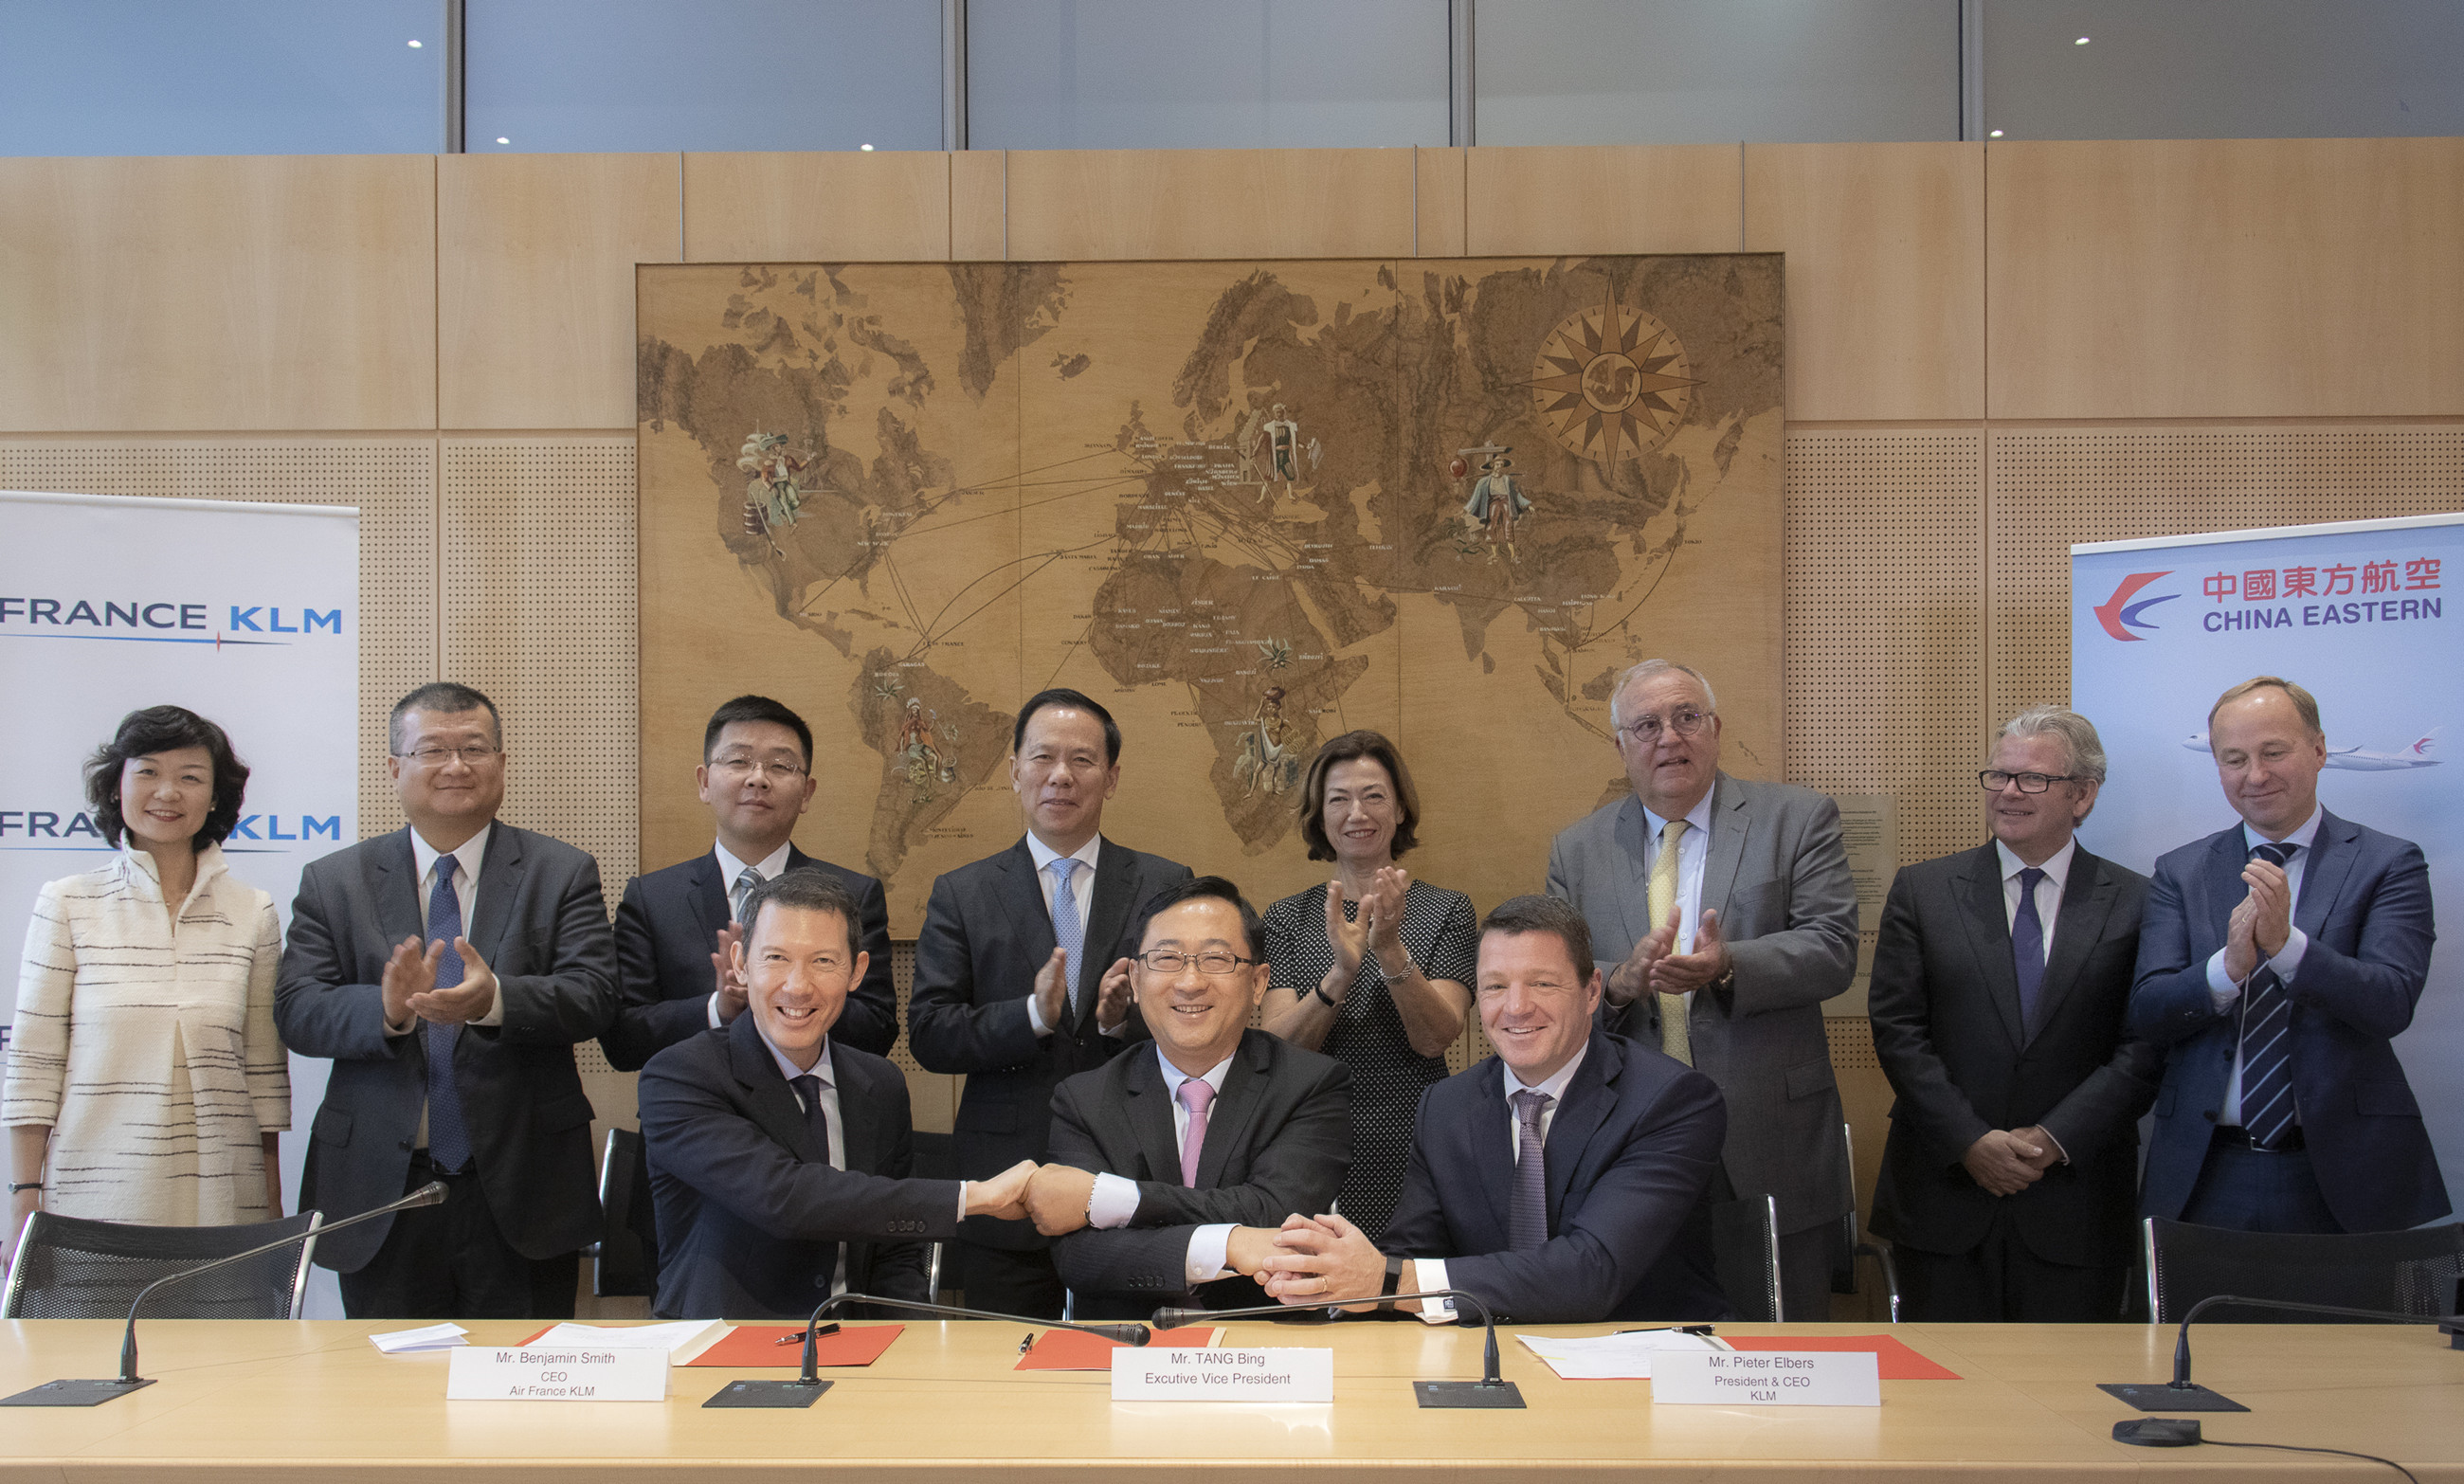 法航荷航集团与中国东方航空签署协议拓展联营合作